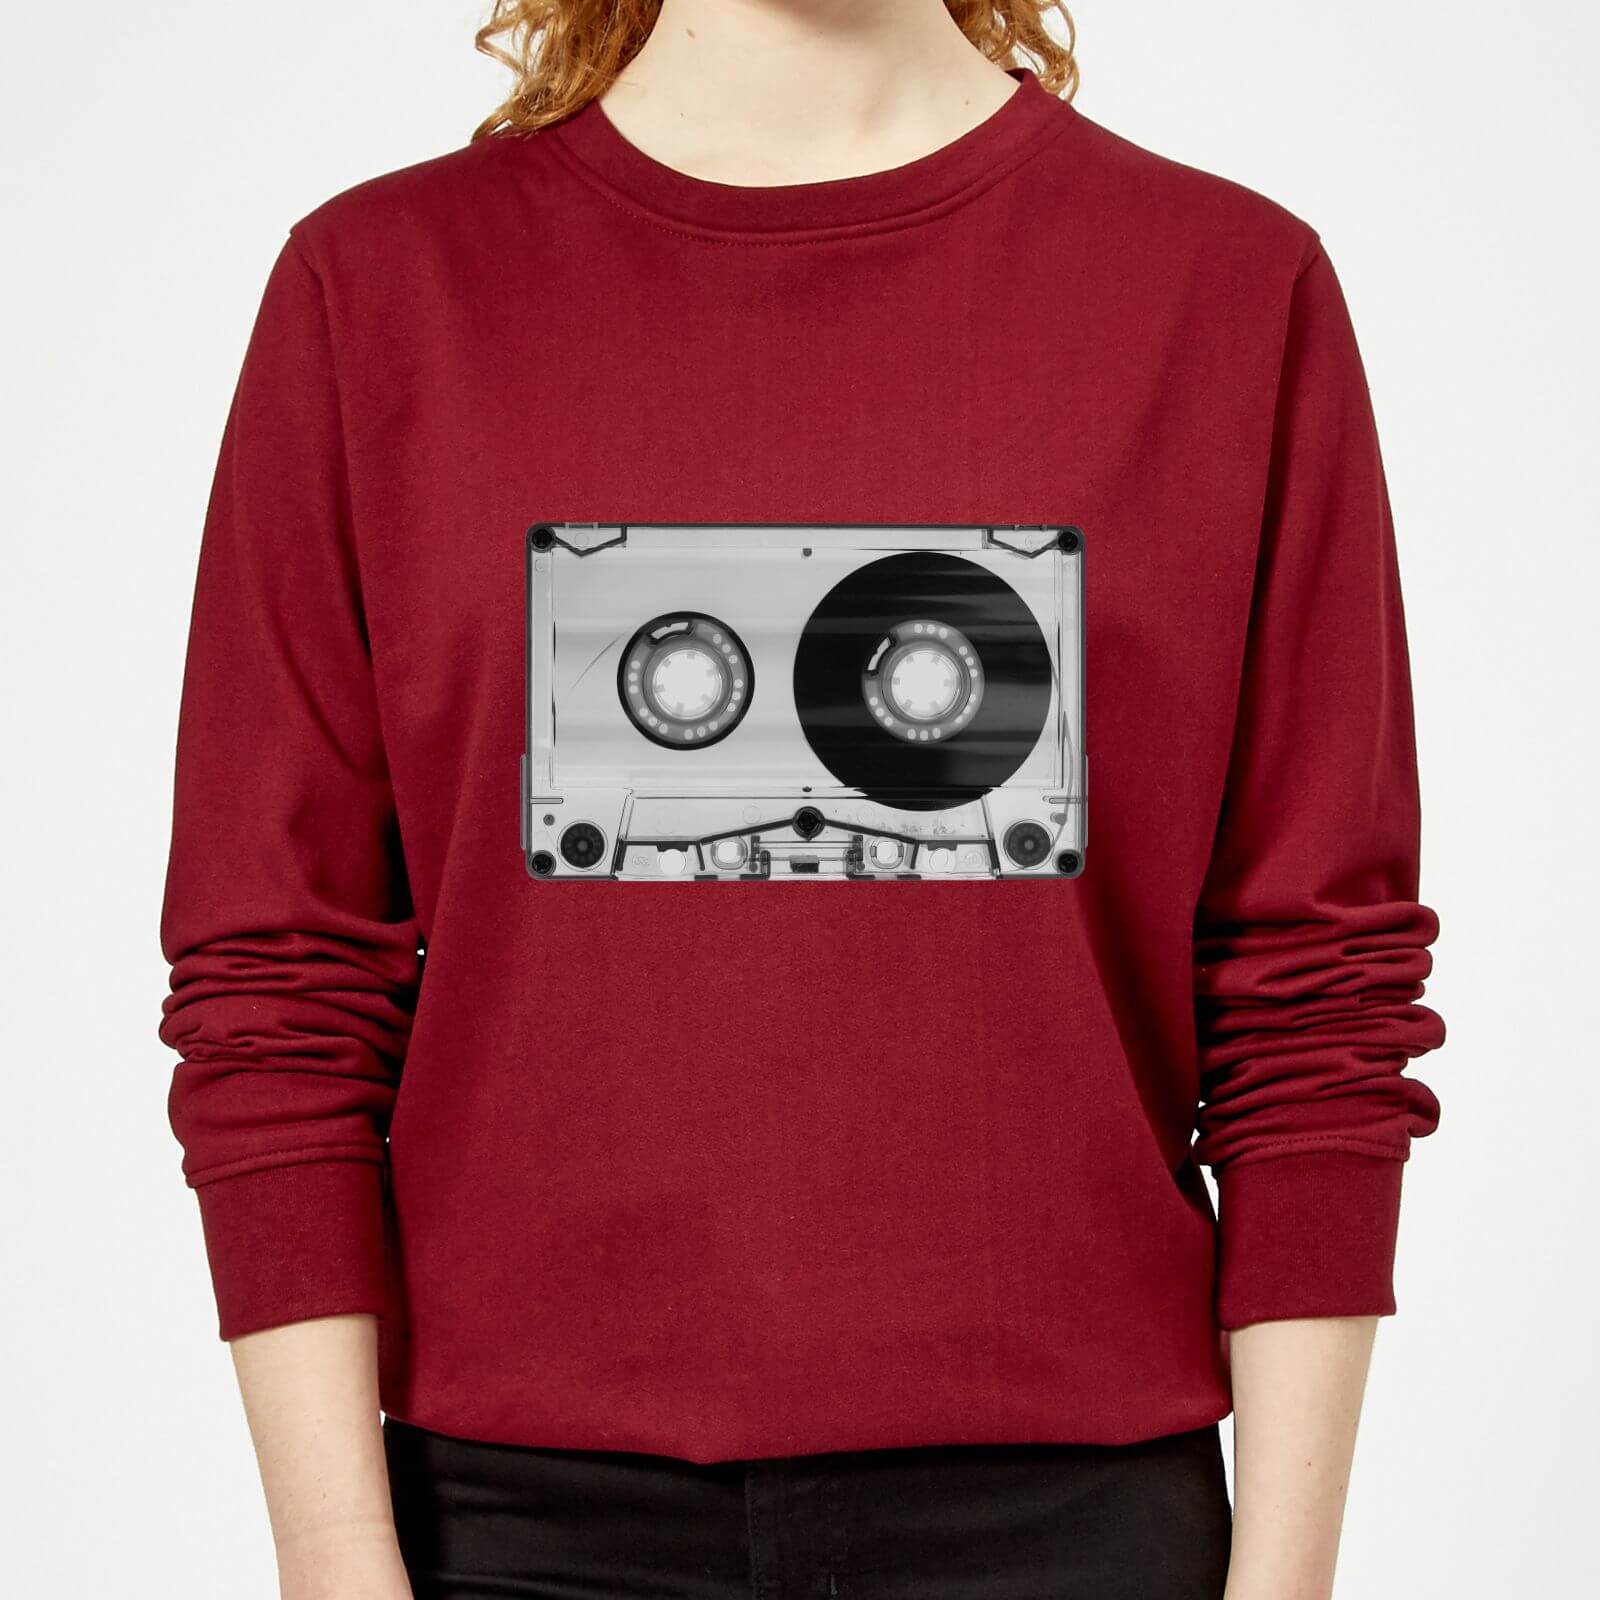 The Motivated Type Tape Women's Sweatshirt - Burgundy - XS - Burgundy